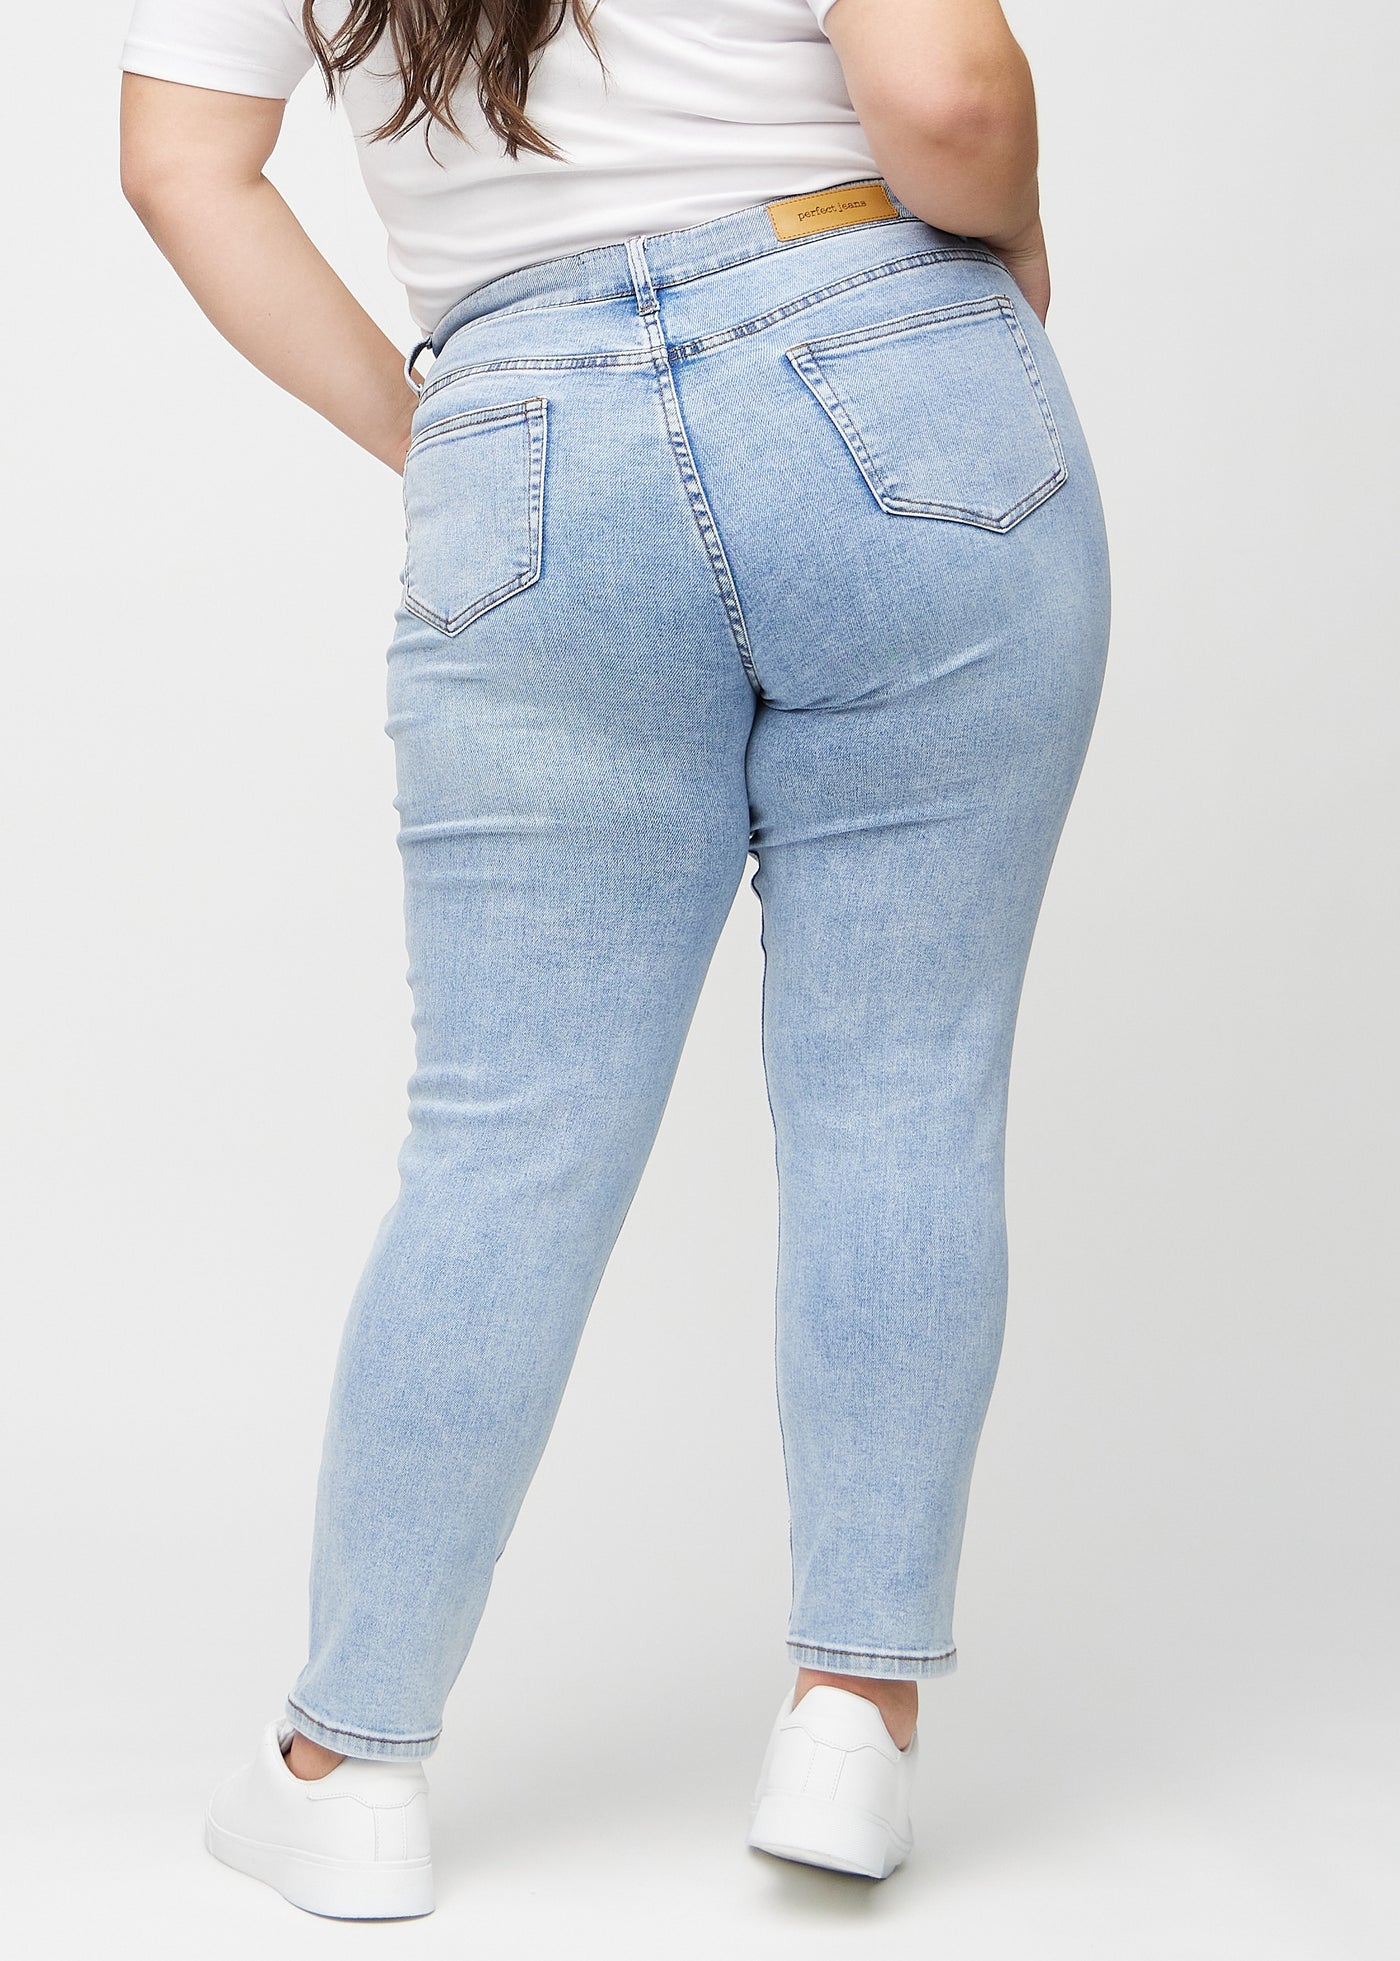 Lys denim slim jeans set bagfra på en plus-size model, så man kan se hele produktet.